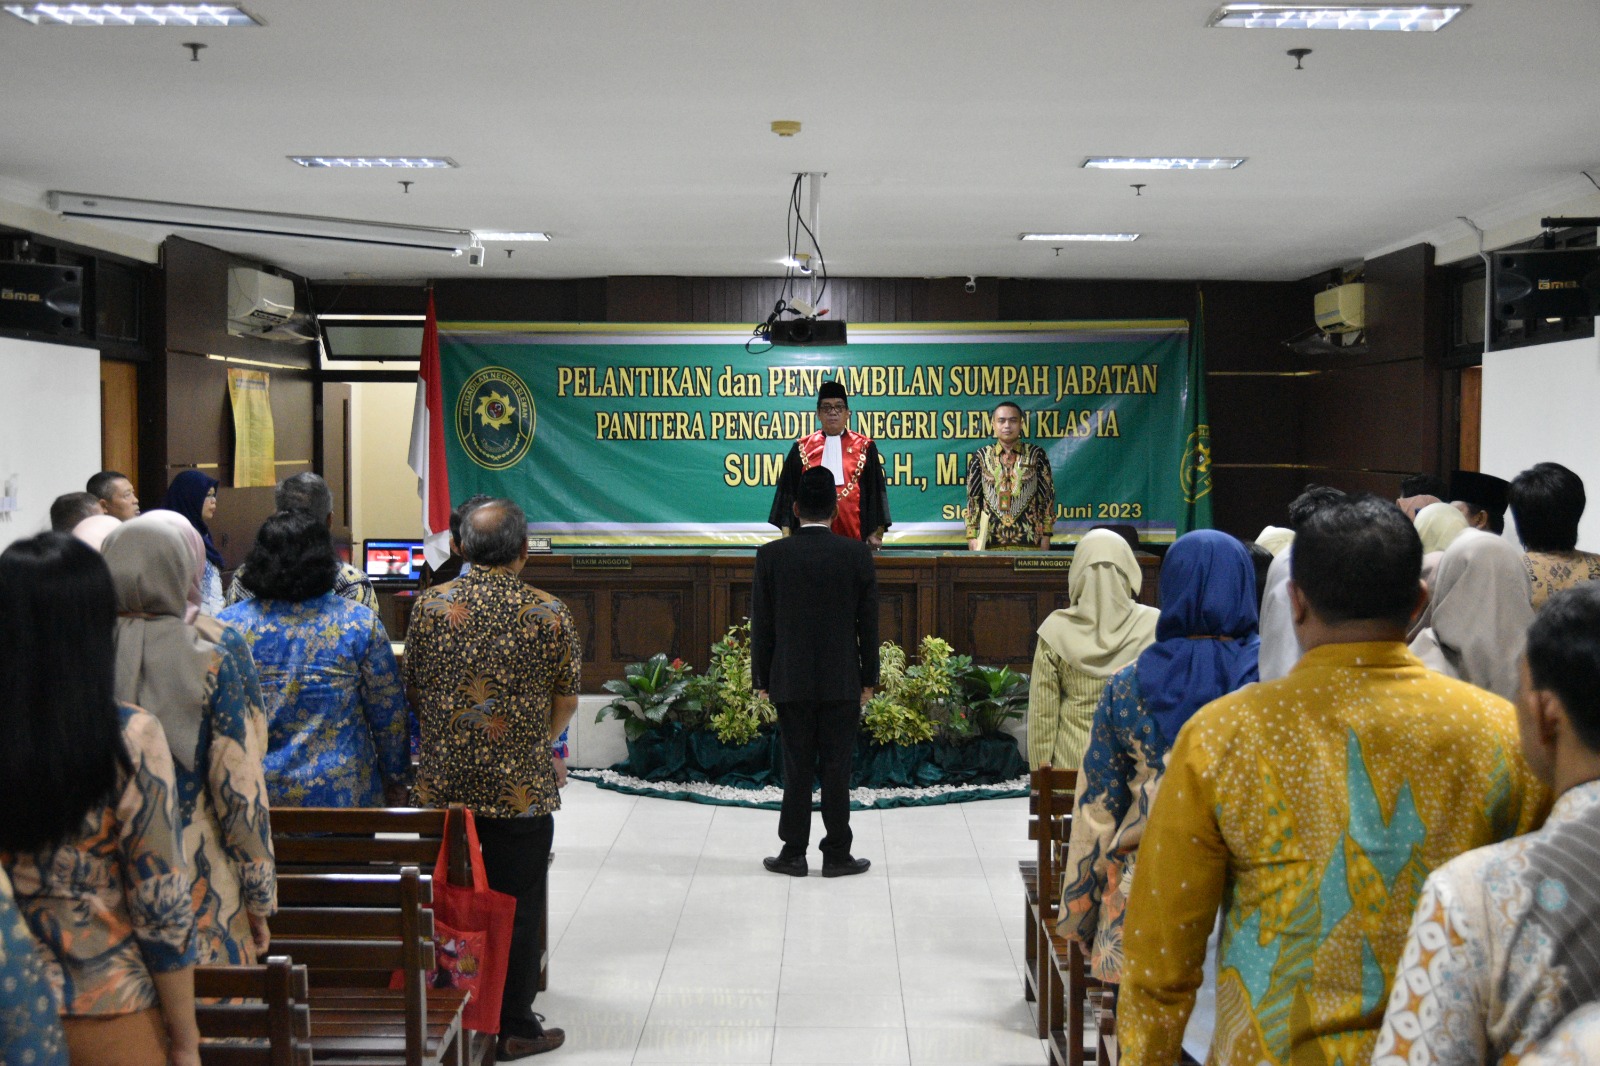 Ketua Pengadilan Negeri Yogyakarta Menghadiri Pelantikan dan Pengambilan Sumpah Jabatan Panitera Pengadilan Negeri Sleman